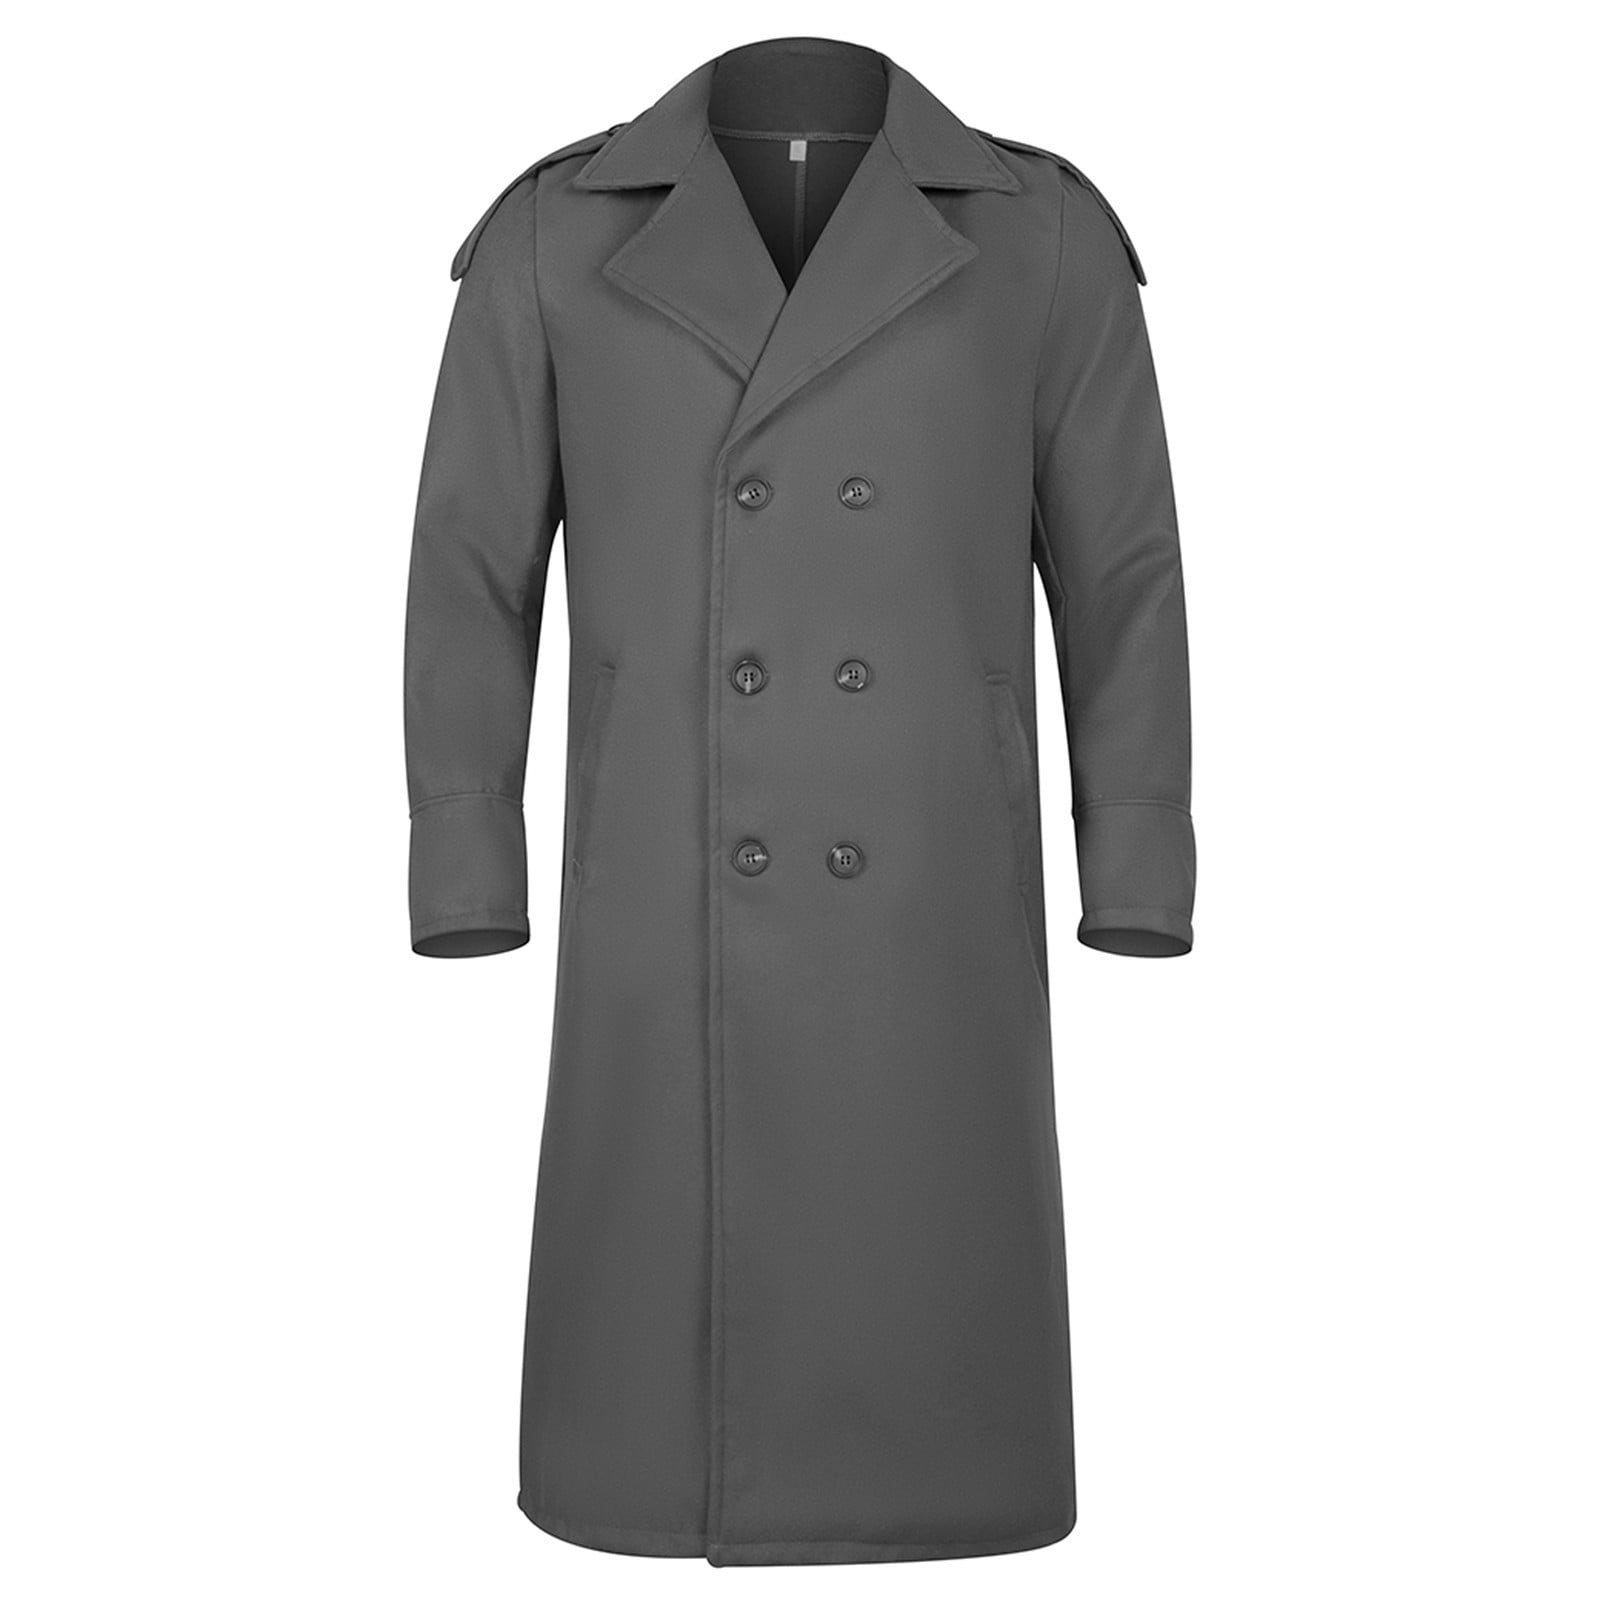 HBFAGFB Mens Winter Coats Men's Fashion Lapel Jacket Double Button ...